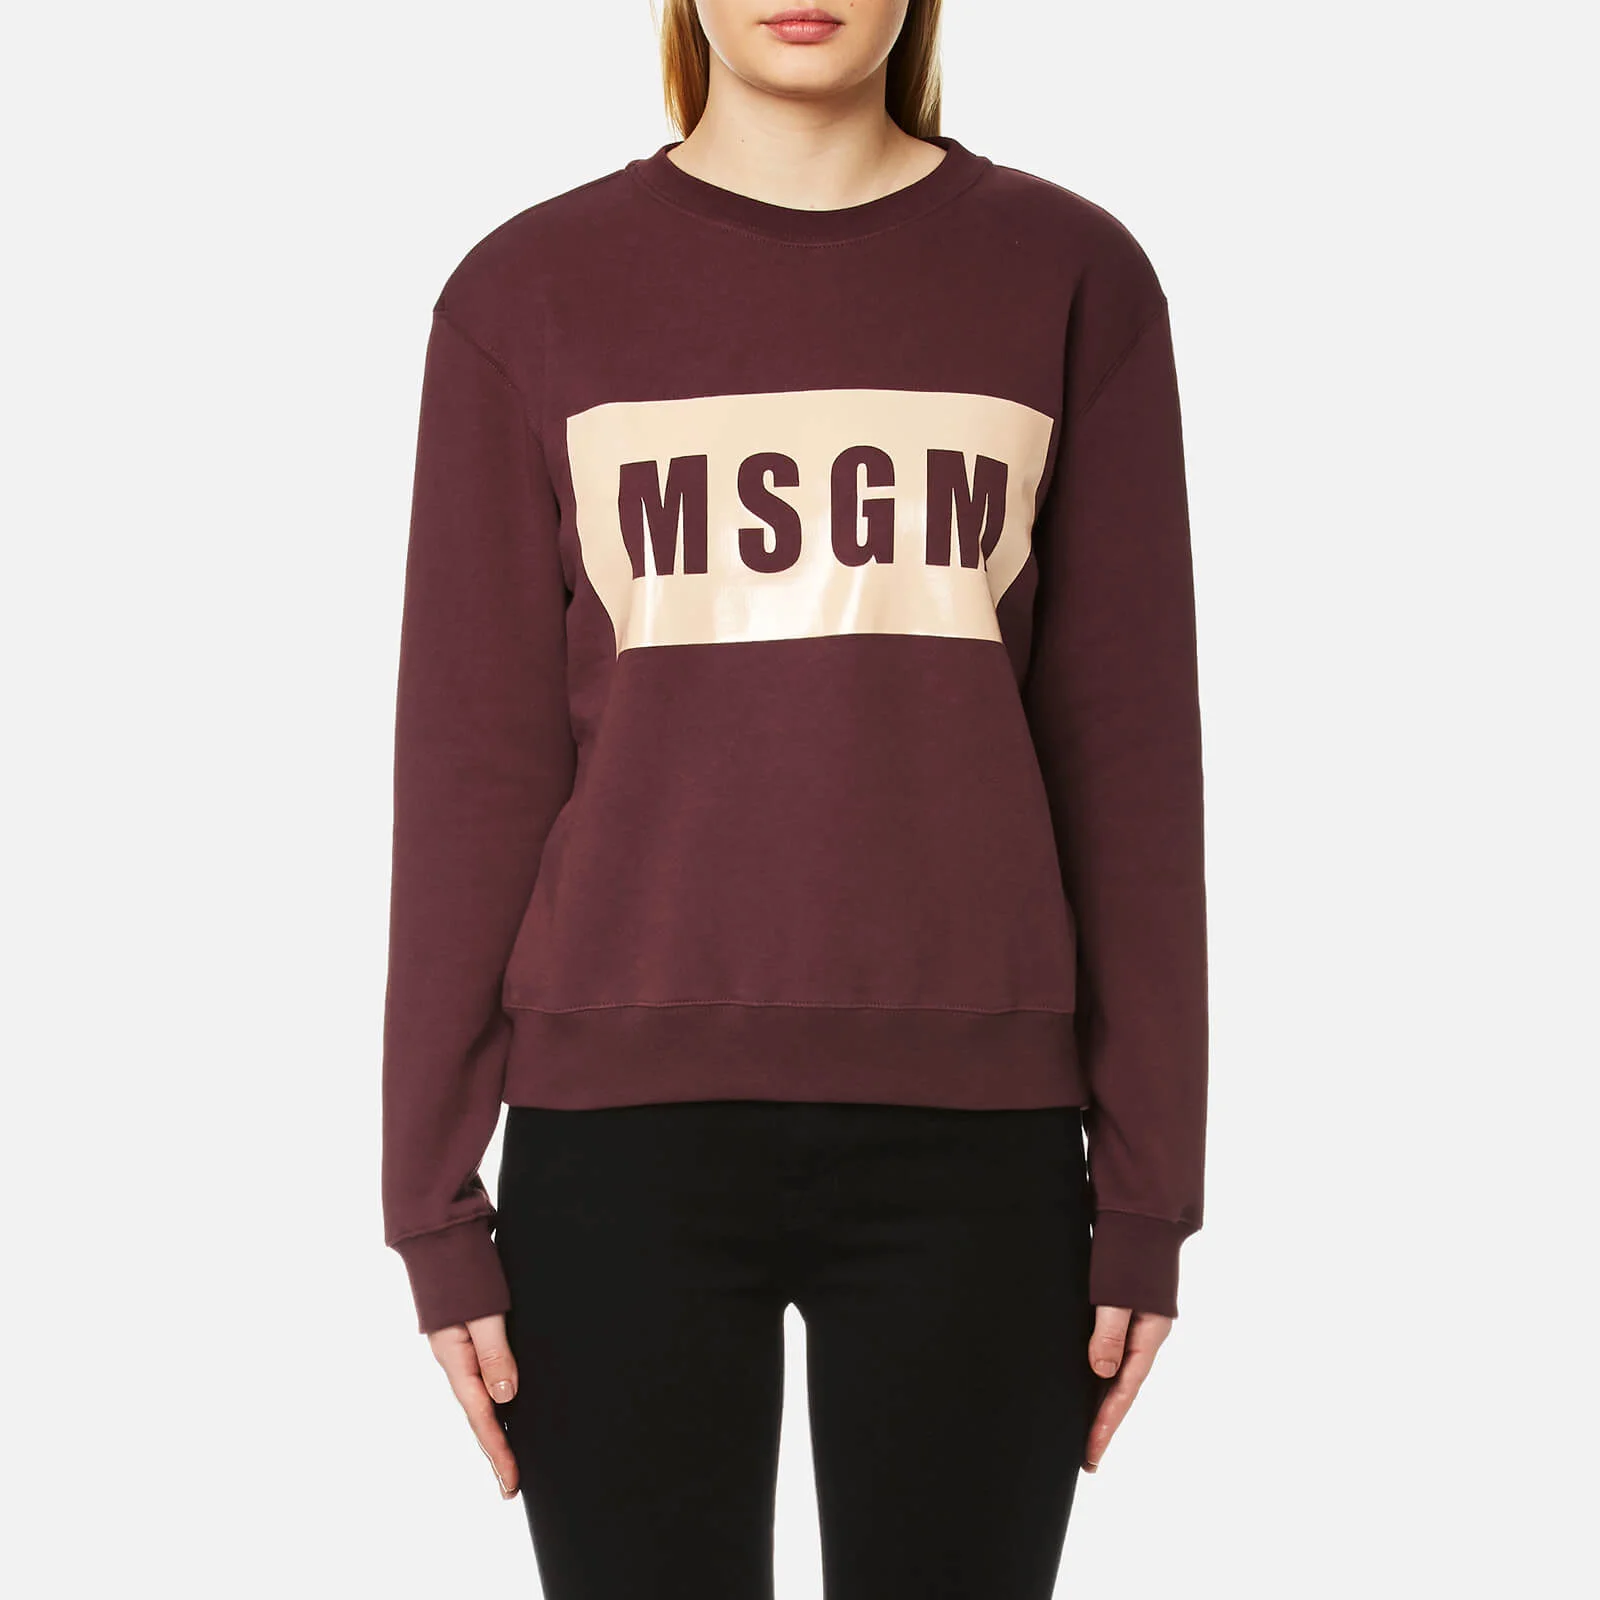 MSGM Women's Logo Sweatshirt - Burgundy Image 1